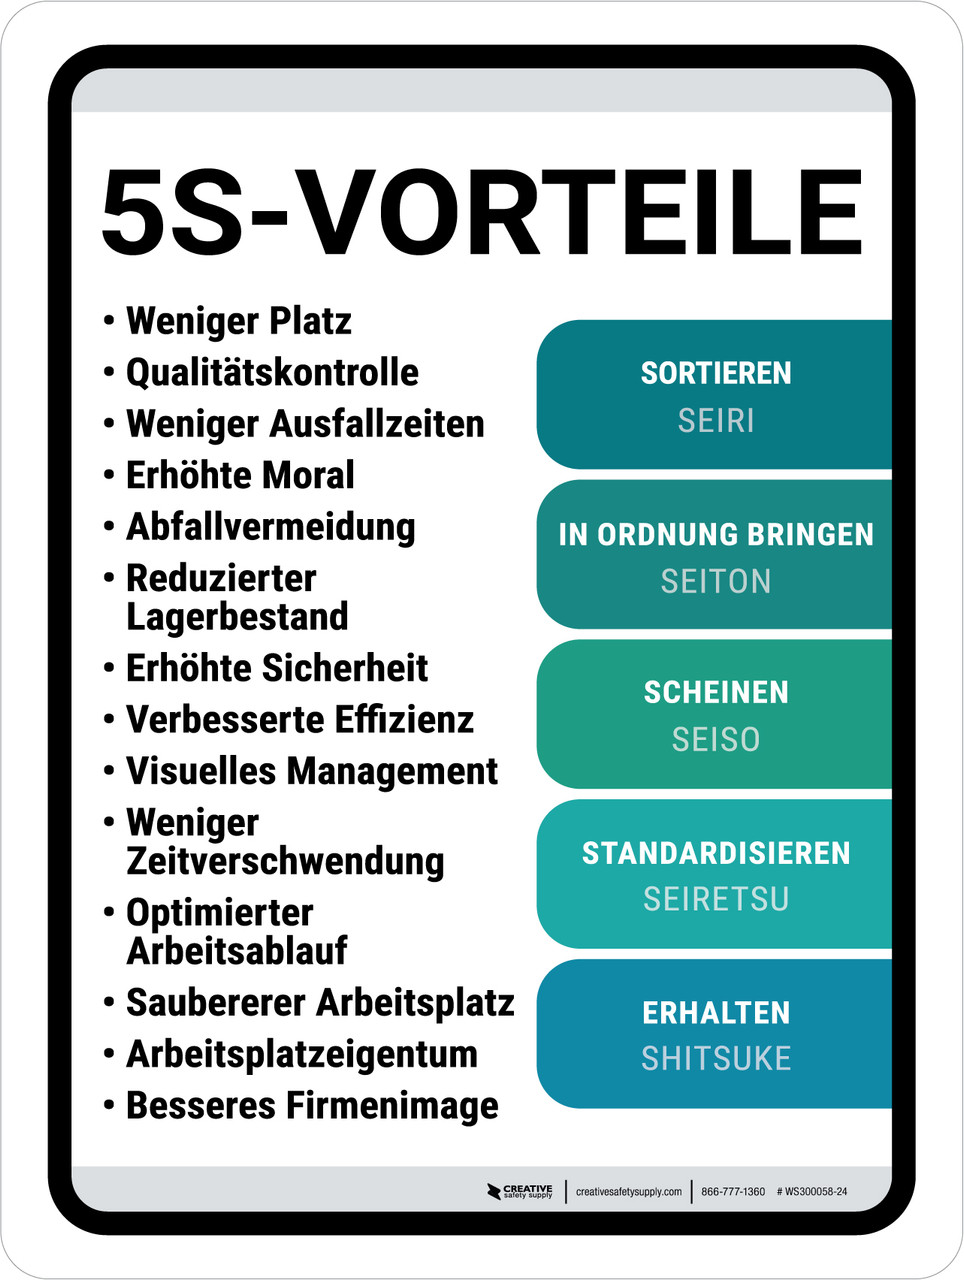 5S schlanke Vorteile (5S Lean Benefits) Portrait German - Wall Sign